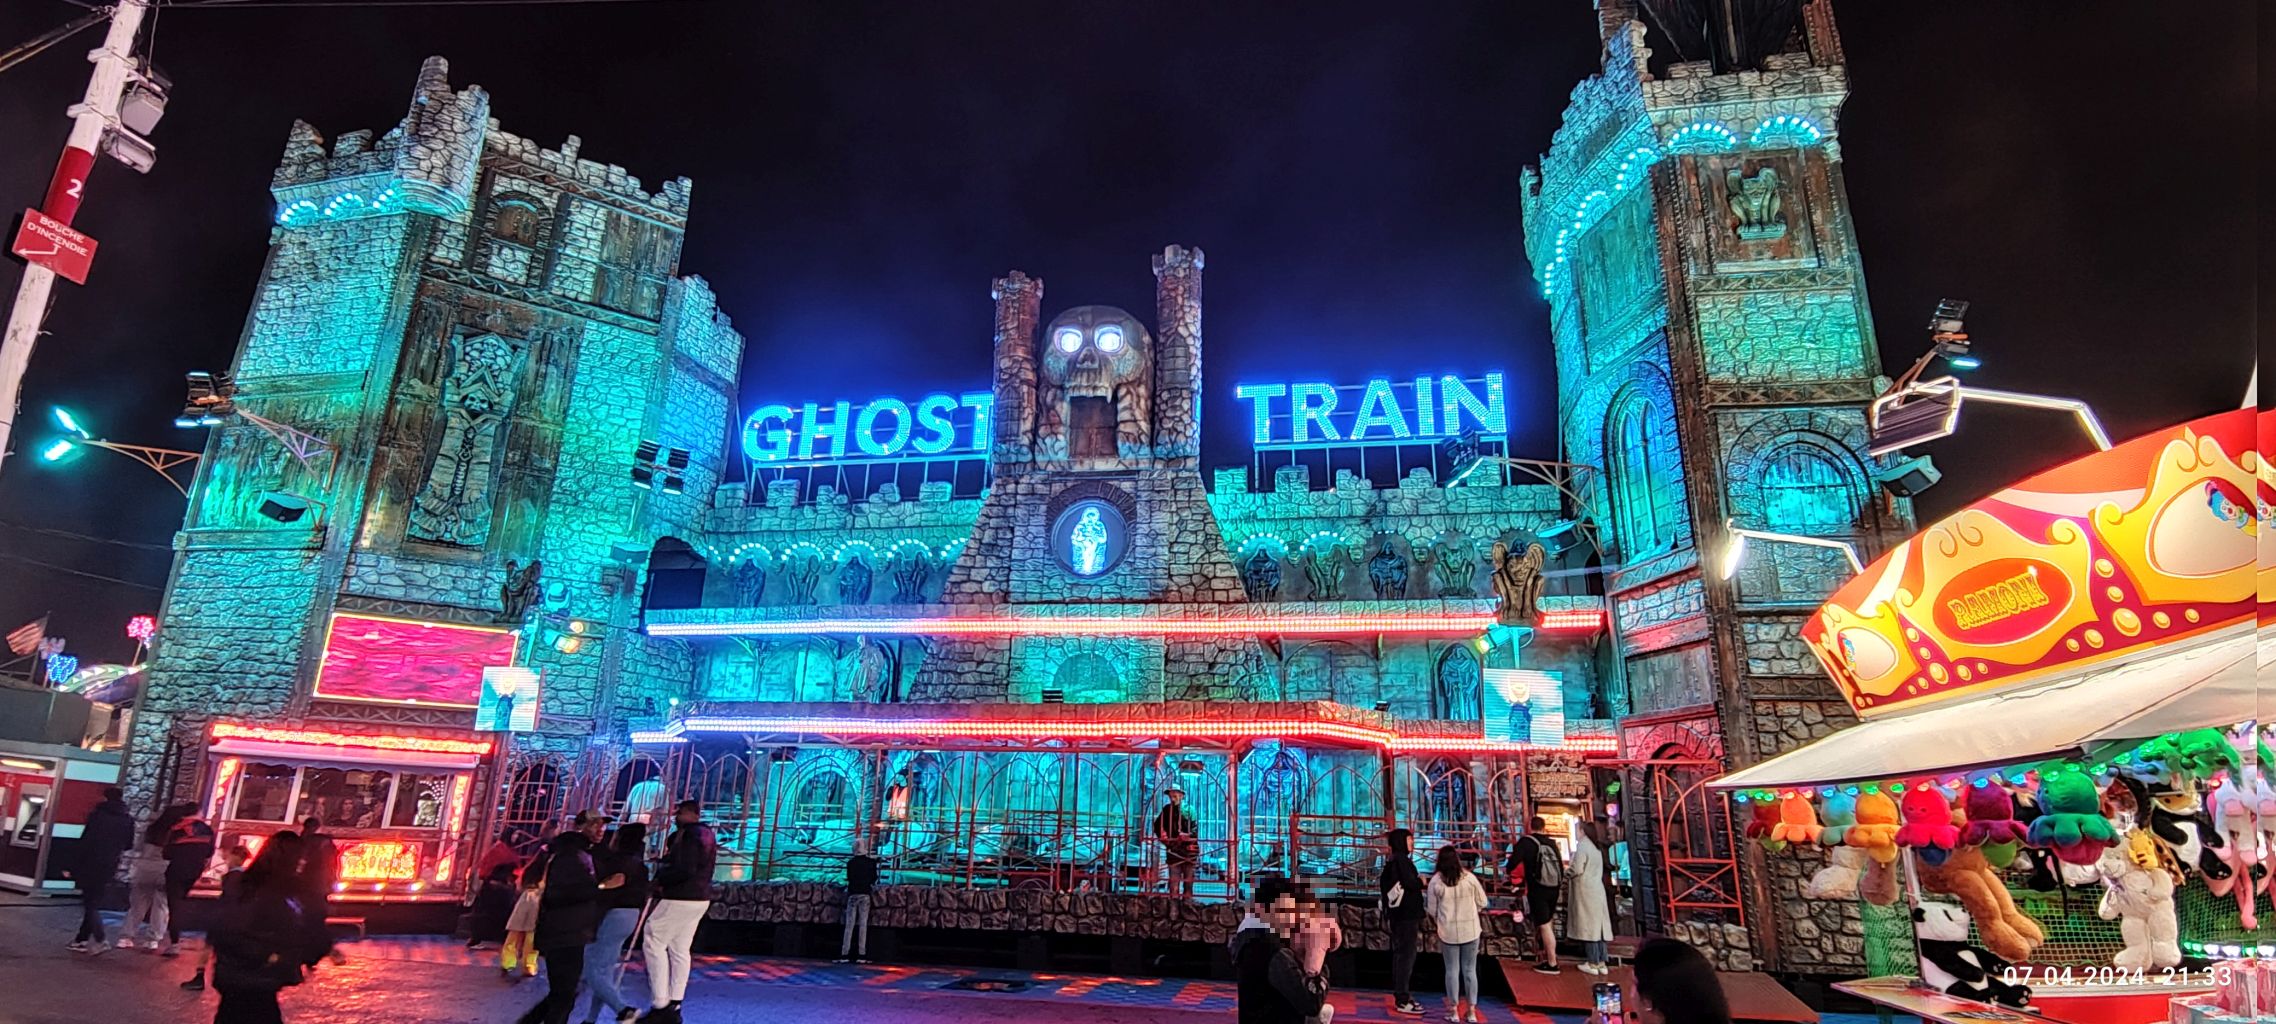 Ghost Train (Maury)